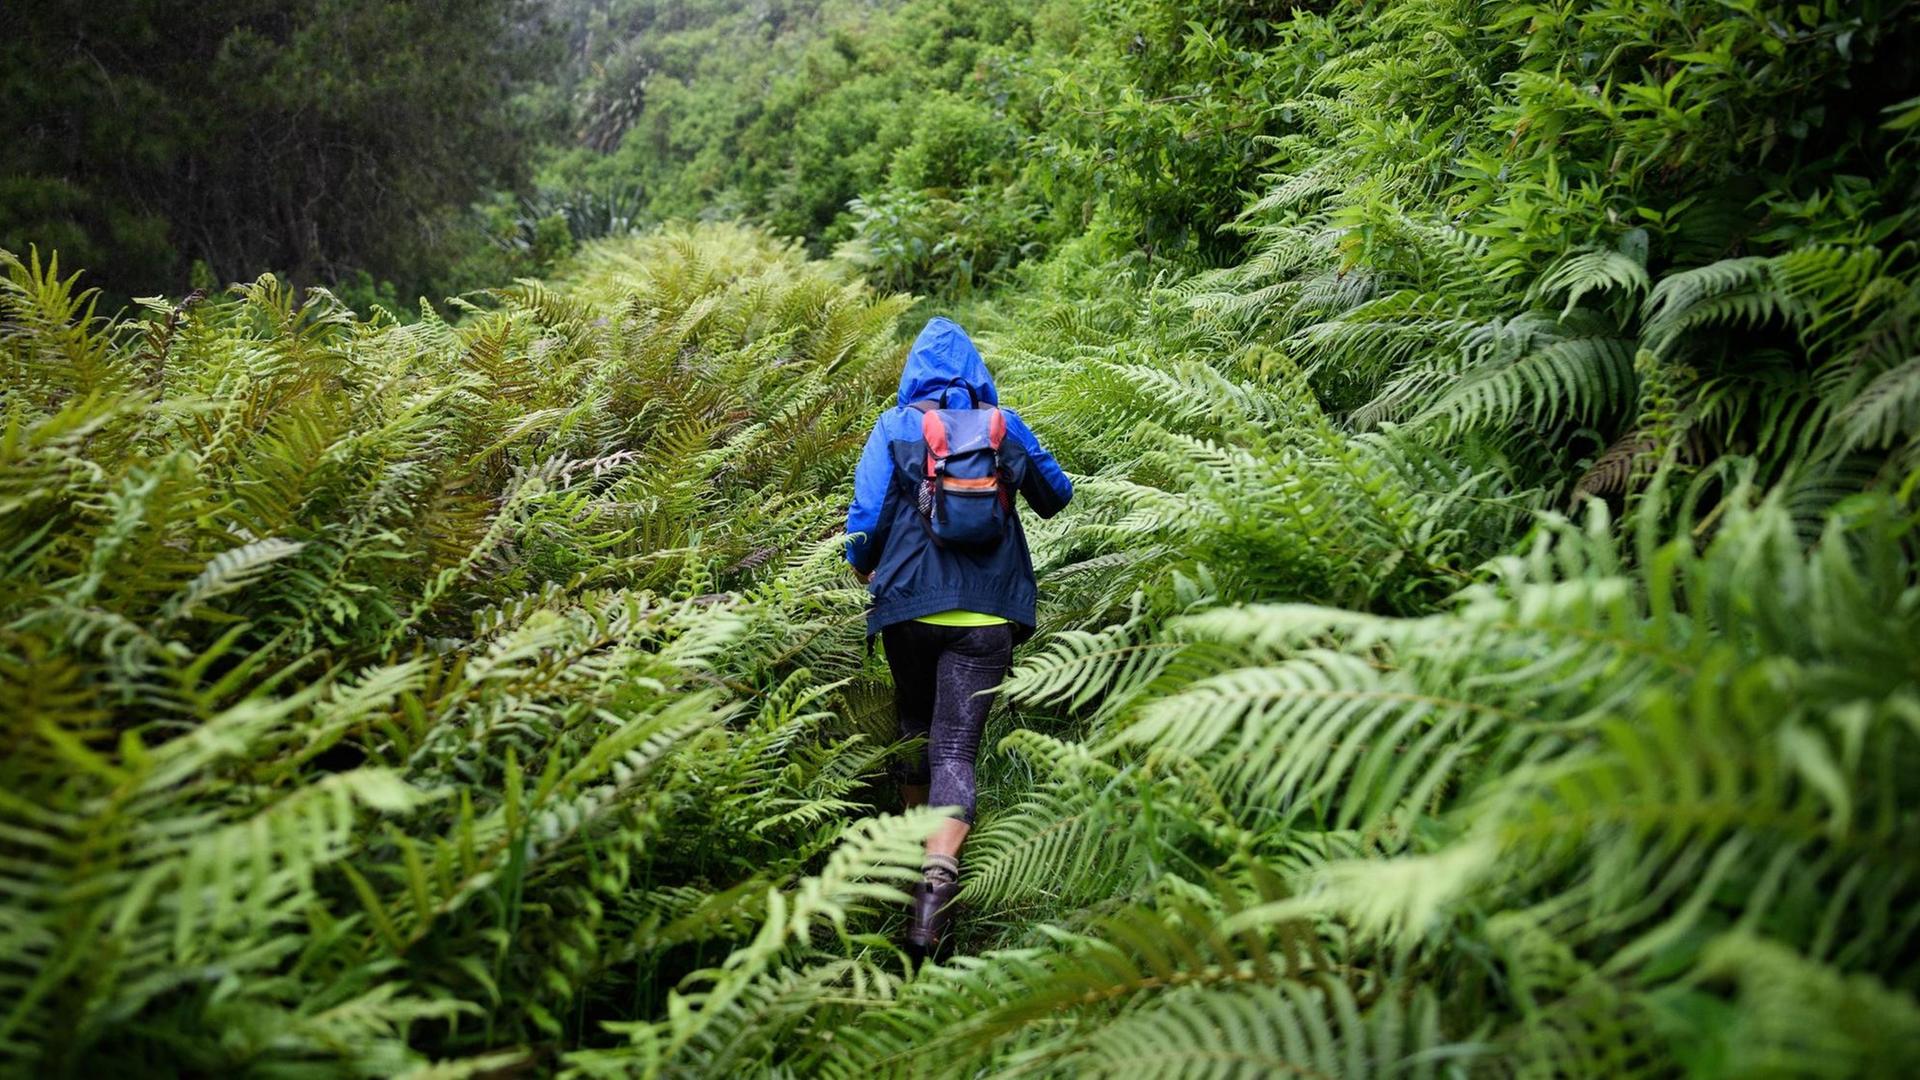 Ein Frau läuft durch von Farnen gesäumten etwas tropisch anmutenden Wald. Sie nur von hinten zu sehen und trägt blaue Outdoor-Kleidung.